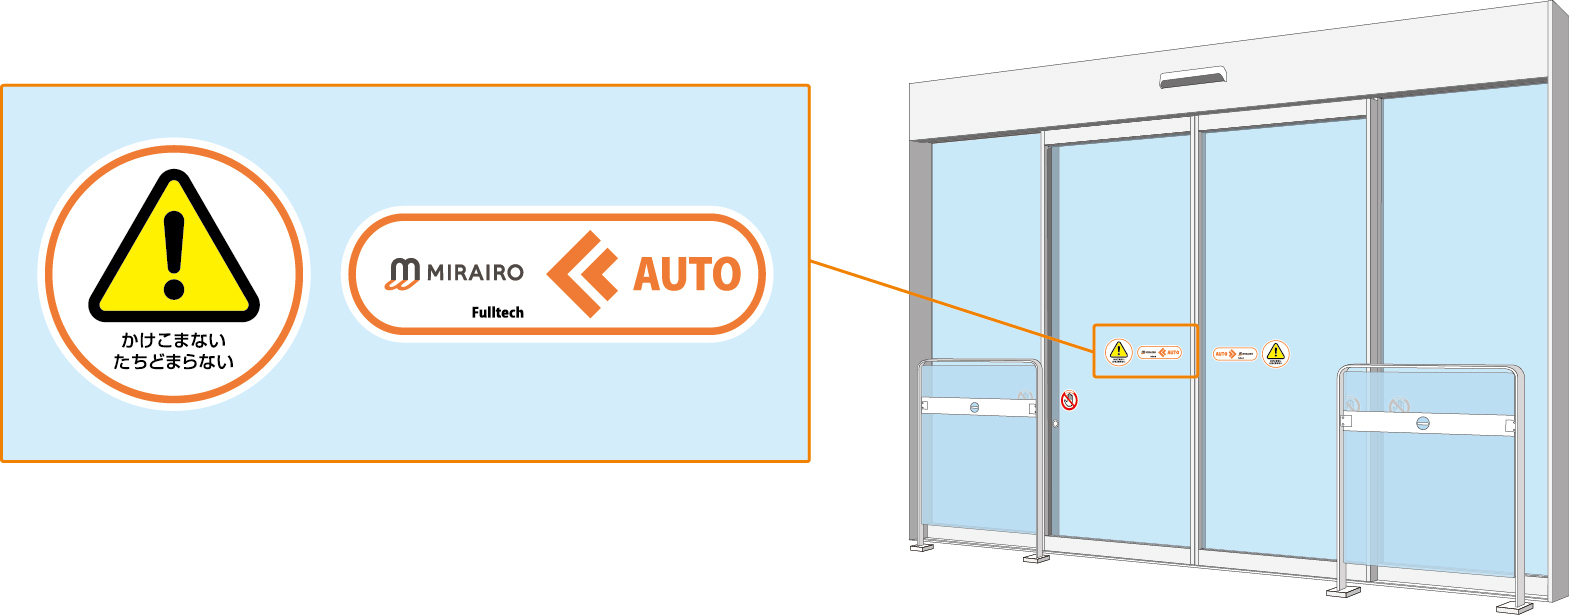 自動ドアには専用のステッカーが貼られており、かけこまないたちどまらないという注意のステッカーとミライロとフルテックのロゴが記載されたステッカーが貼られています。